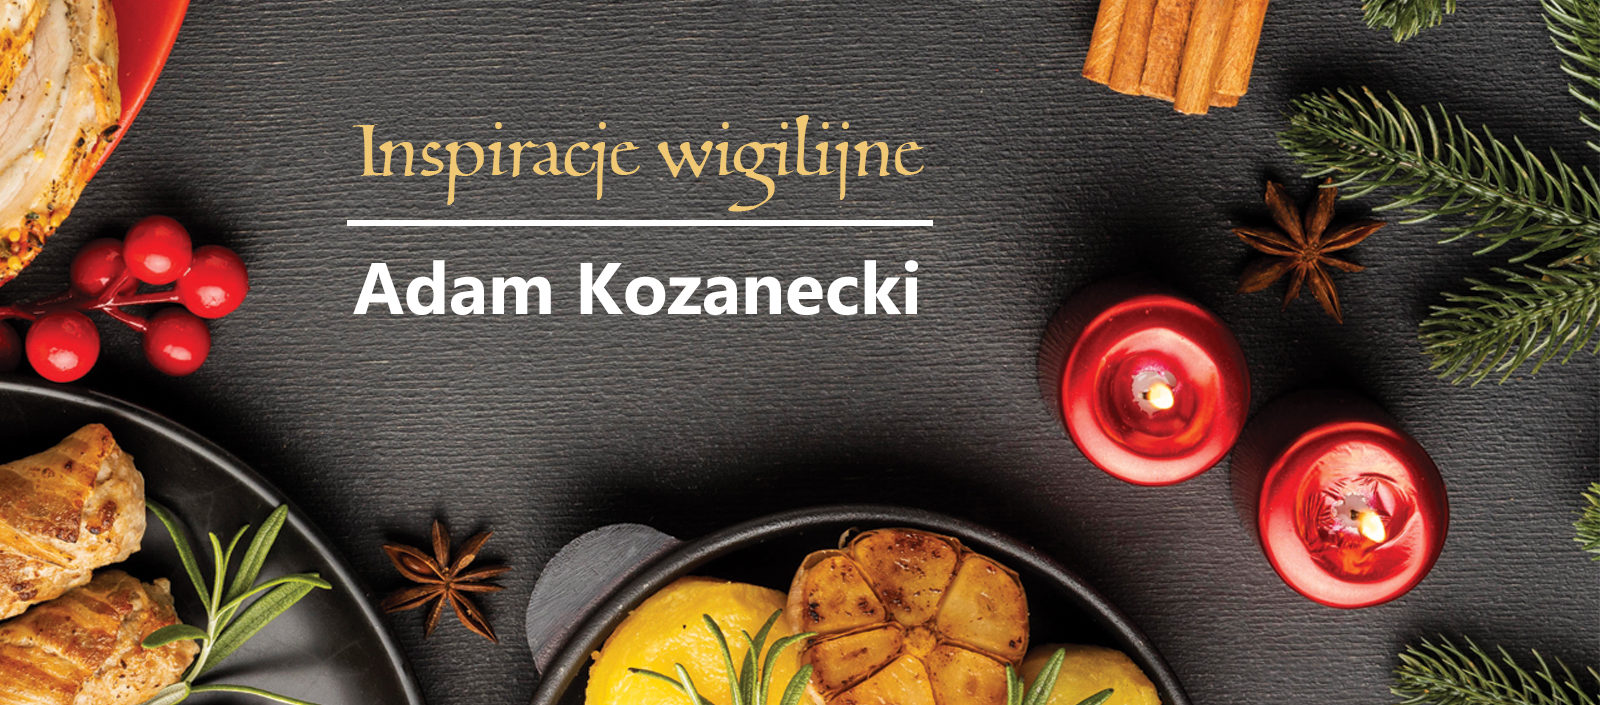 warsztaty kulinarne Inspiracje wigilijne z Adamem Kozaneckim